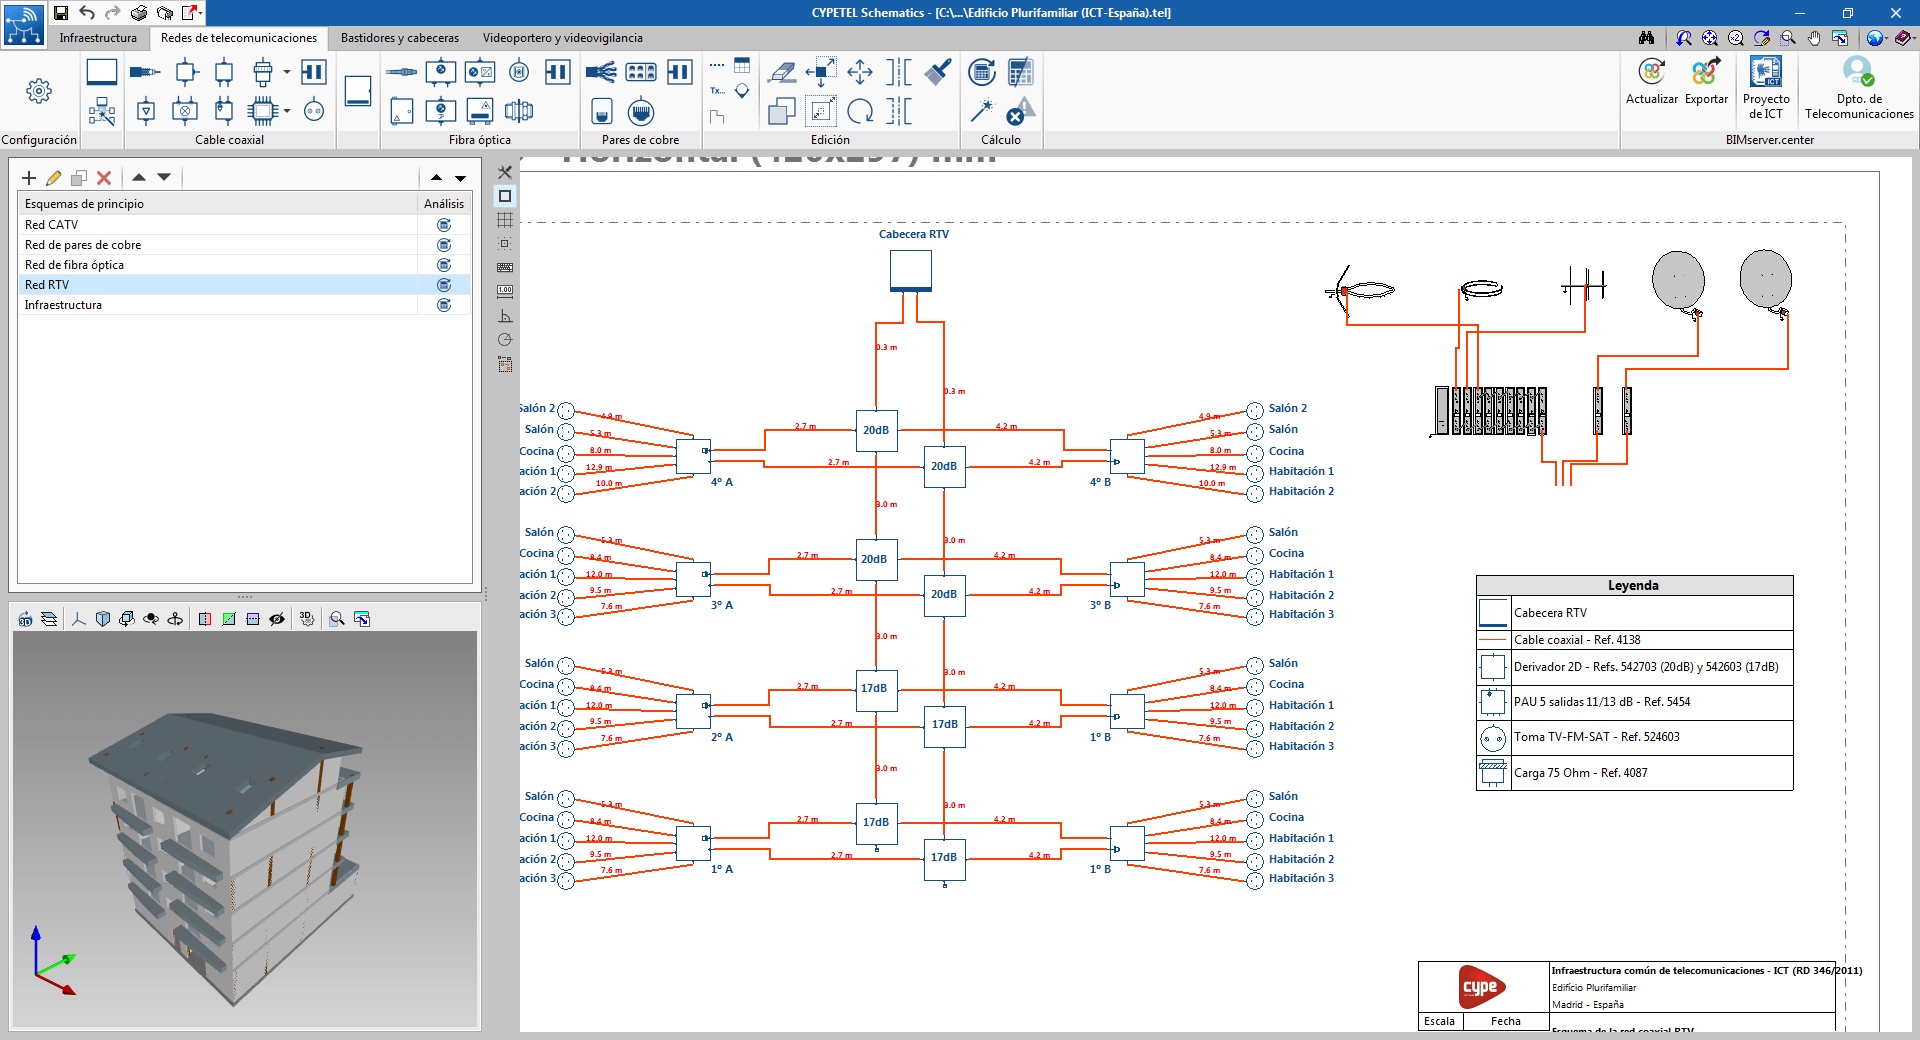 2021e cypetel schematics 01